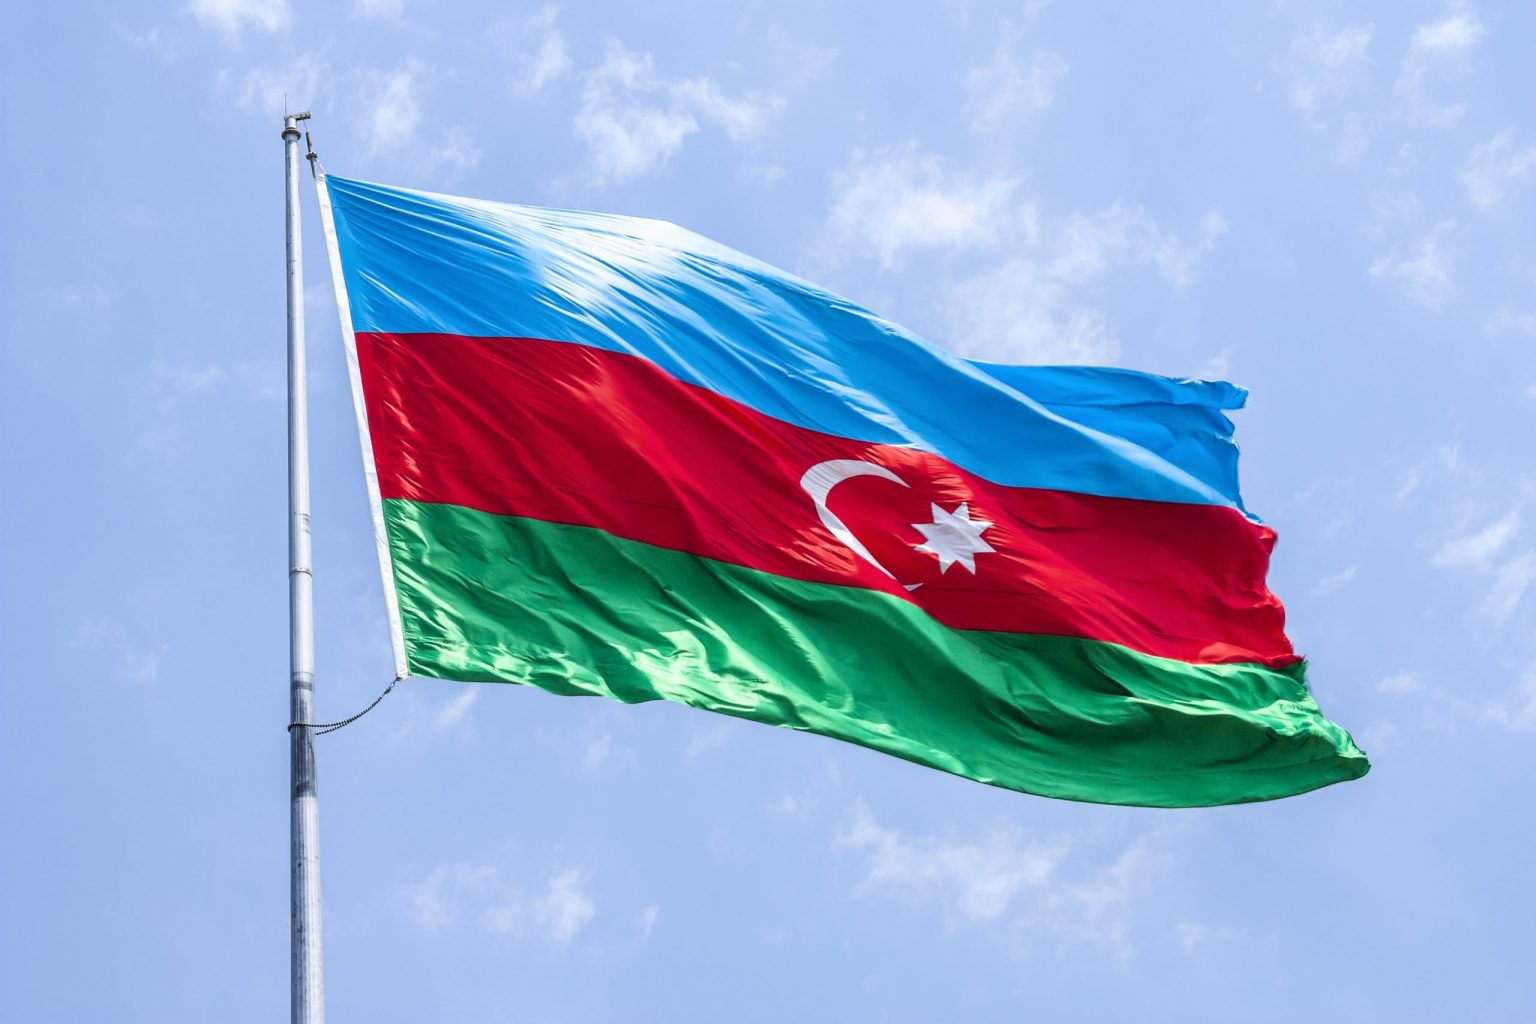 Ադրբեջանի արտահերթ նախագահական ընտրություններում նախագահի թեկնածուների թիվը հասել է 15-ի